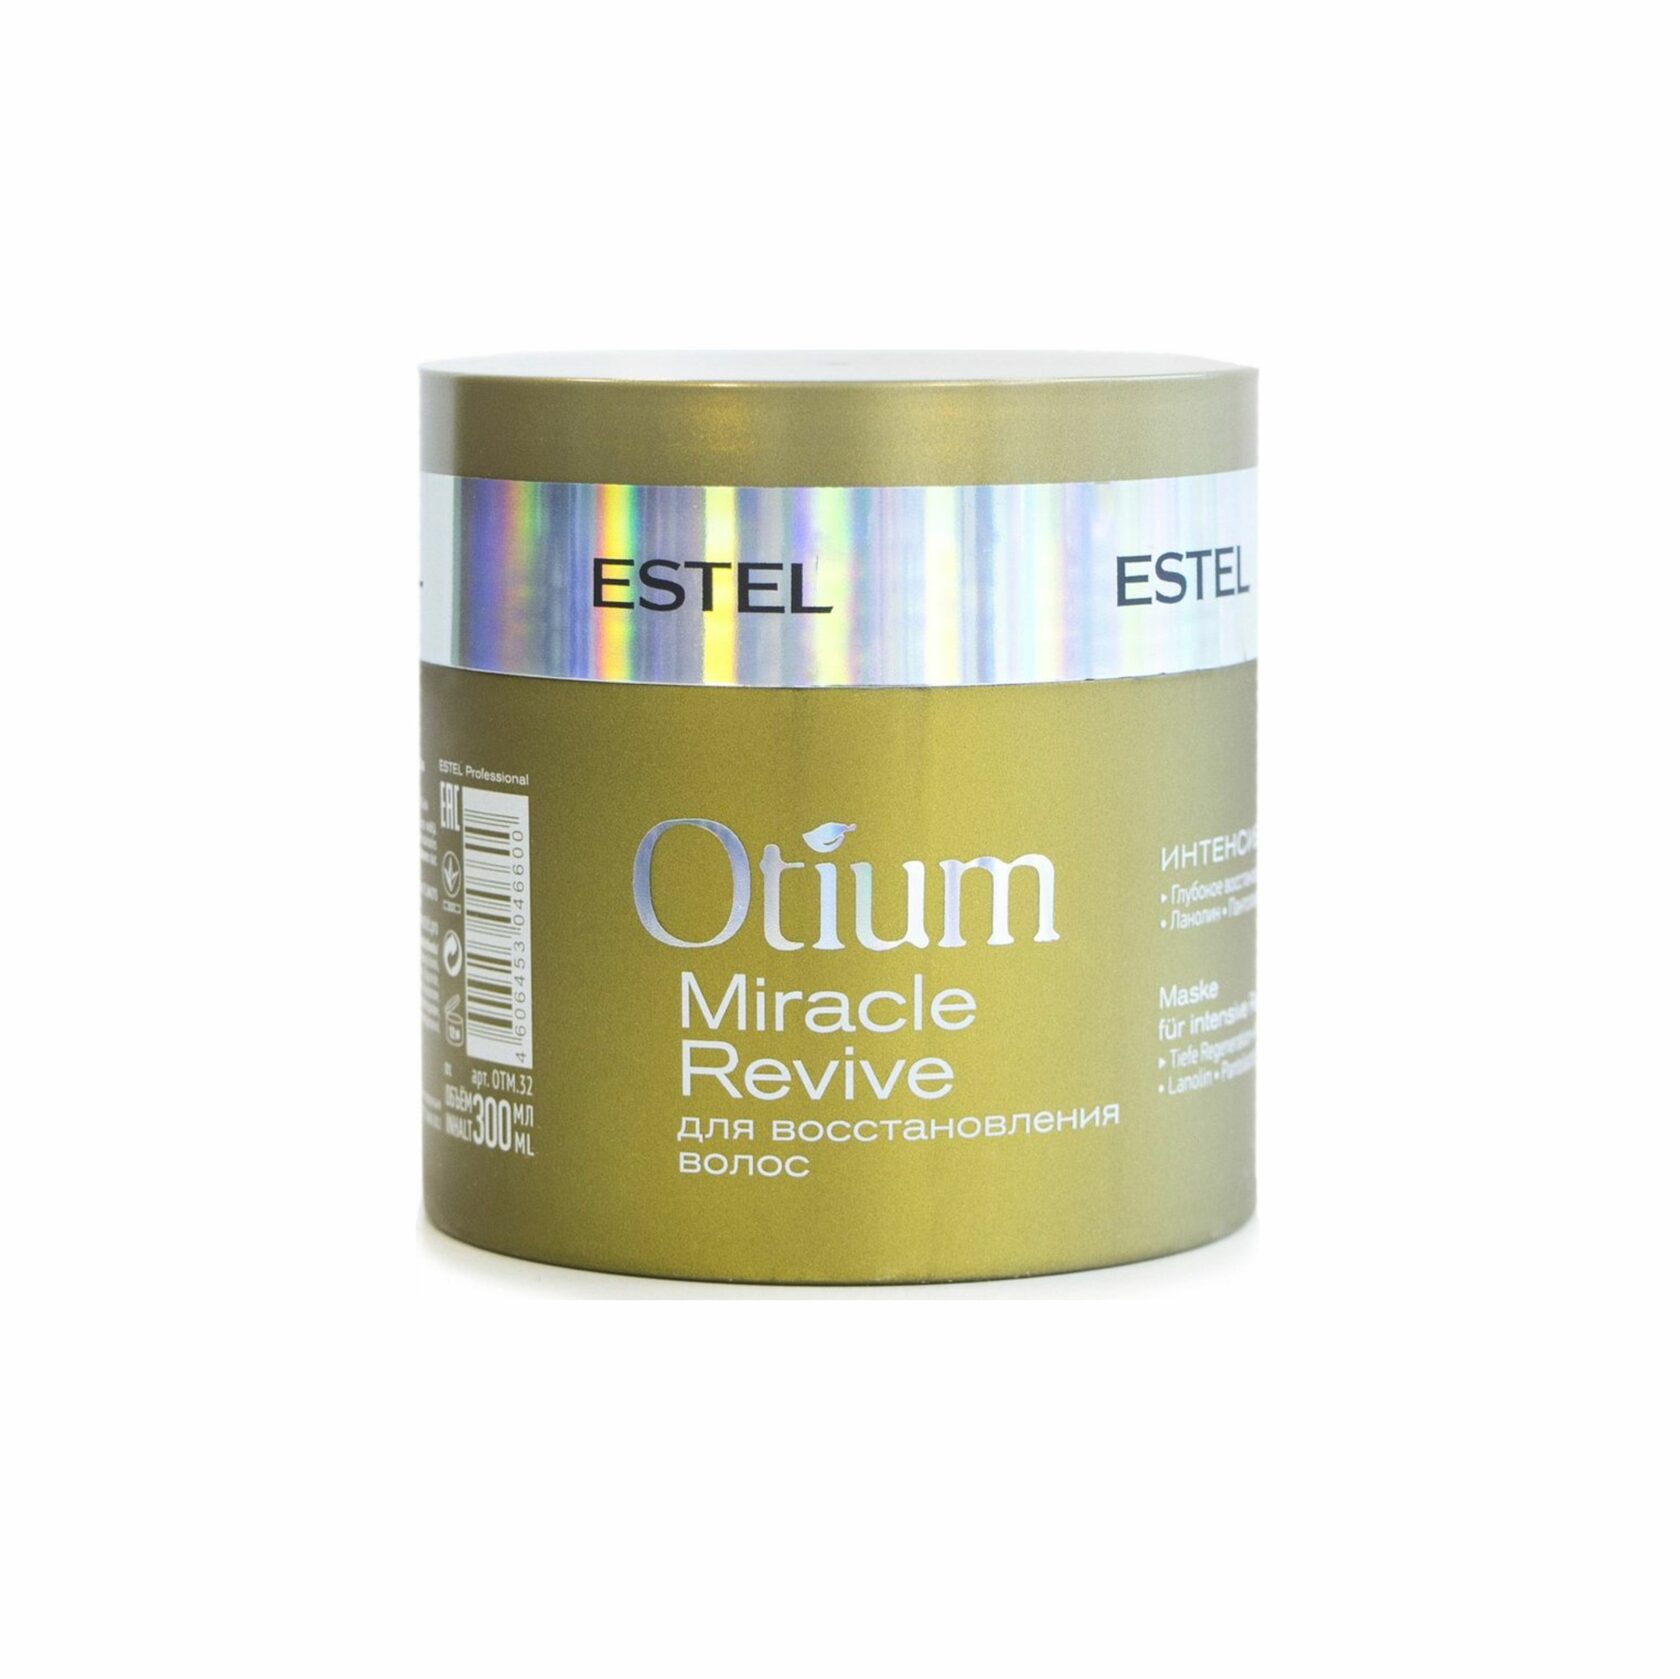 Otium маска для волос. Маска отиум Эстель. Маска Эстель отиум Миракл. Маска для волос Эстель Otium. Estel Miracle Revive.